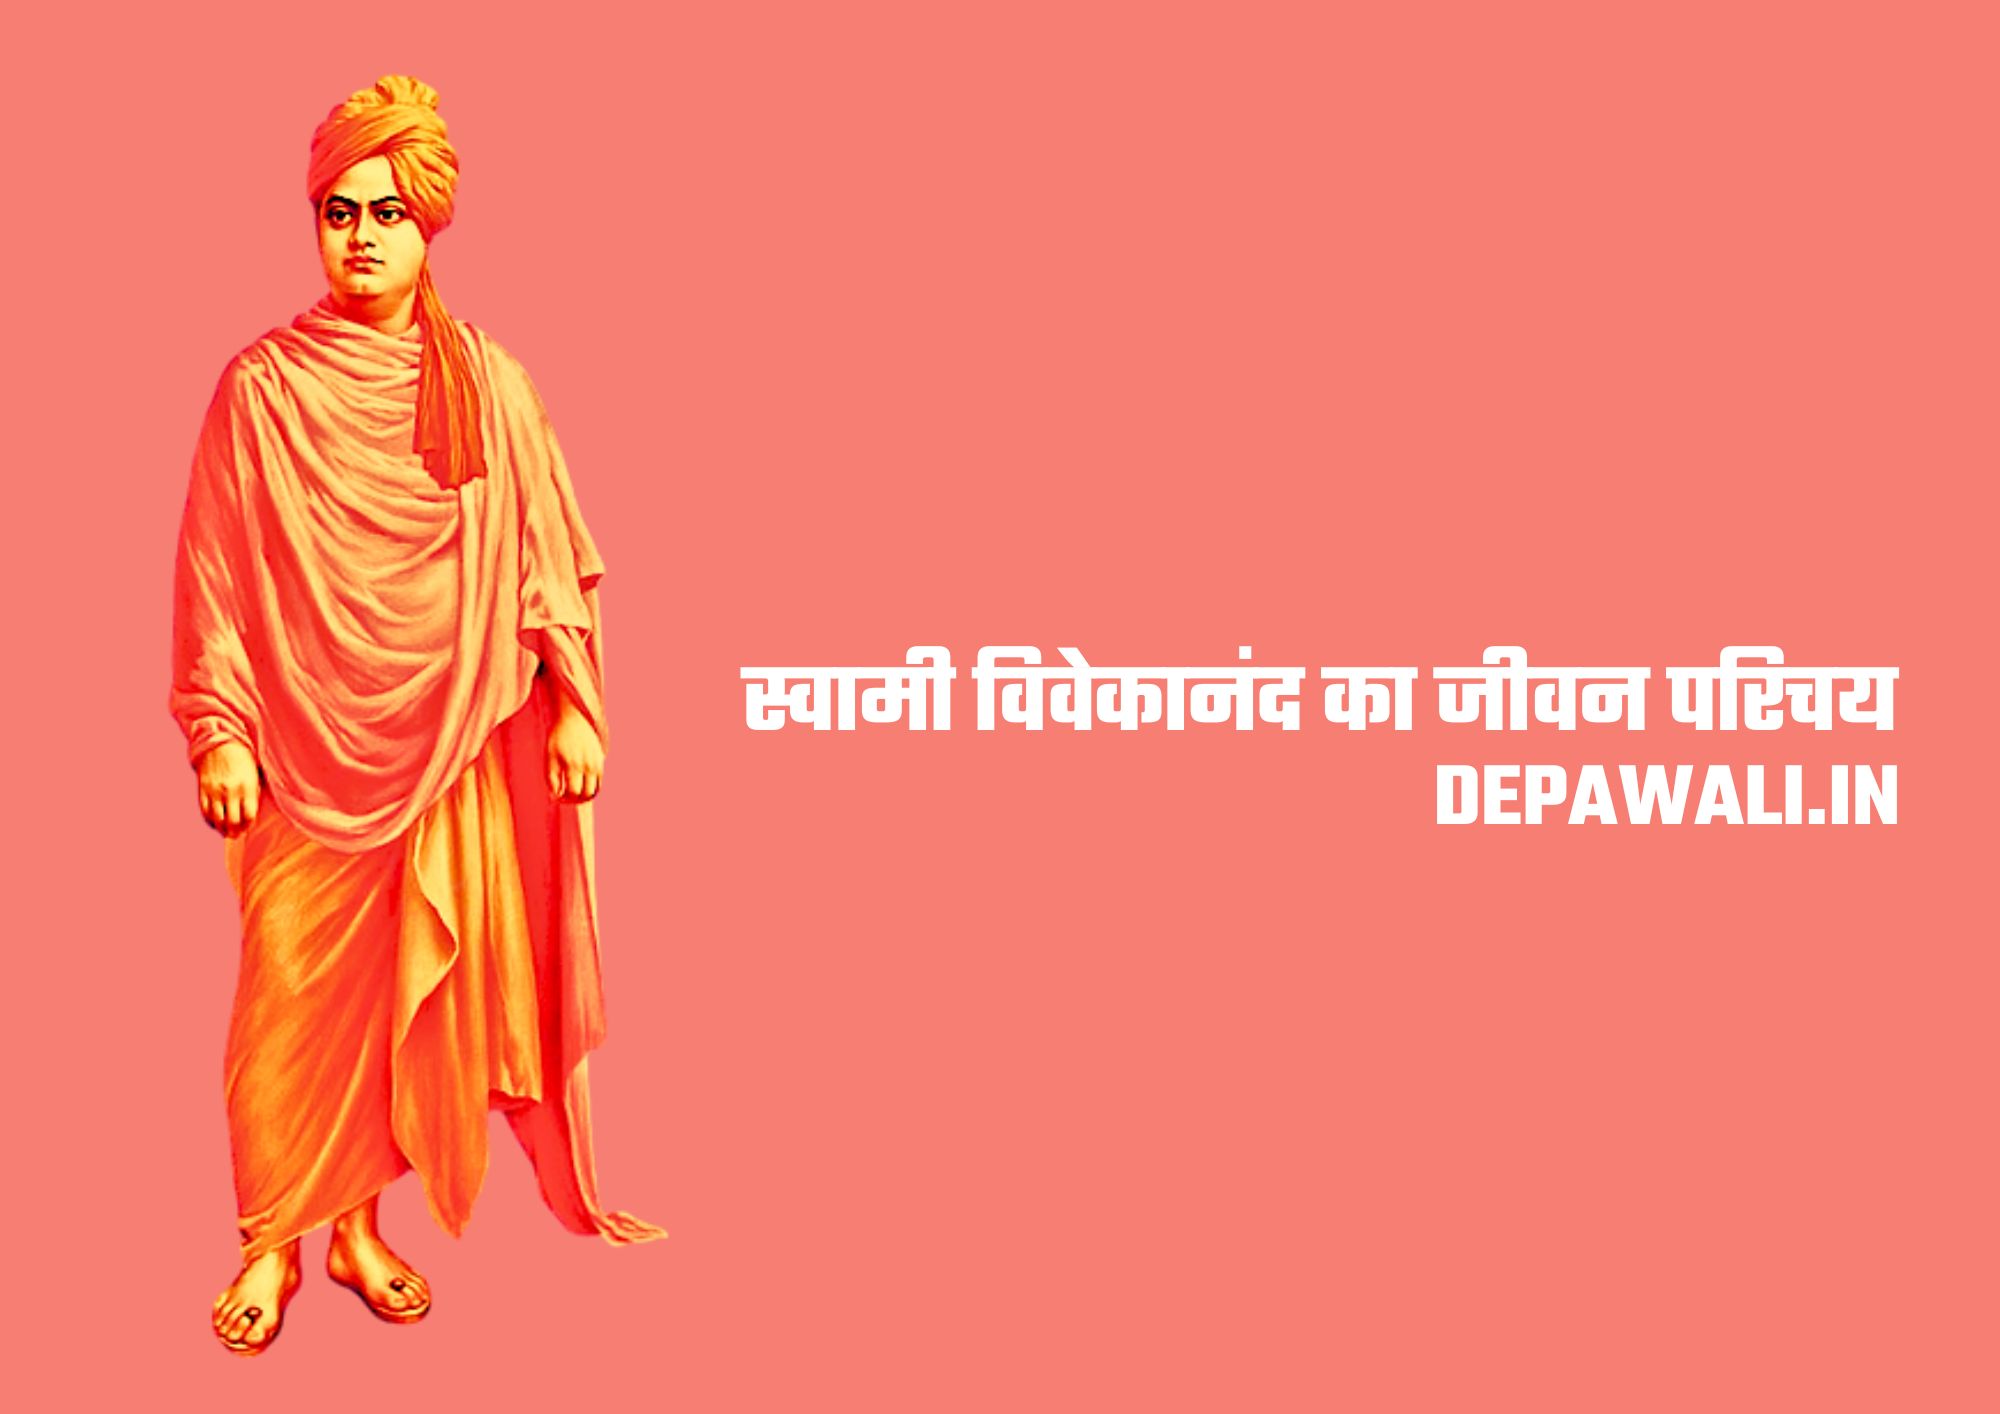 स्वामी विवेकानंद का जीवन परिचय इन हिंदी - Swami Vivekananda Biography In Hindi - Swami Vivekanand Ka Jivan Parichay